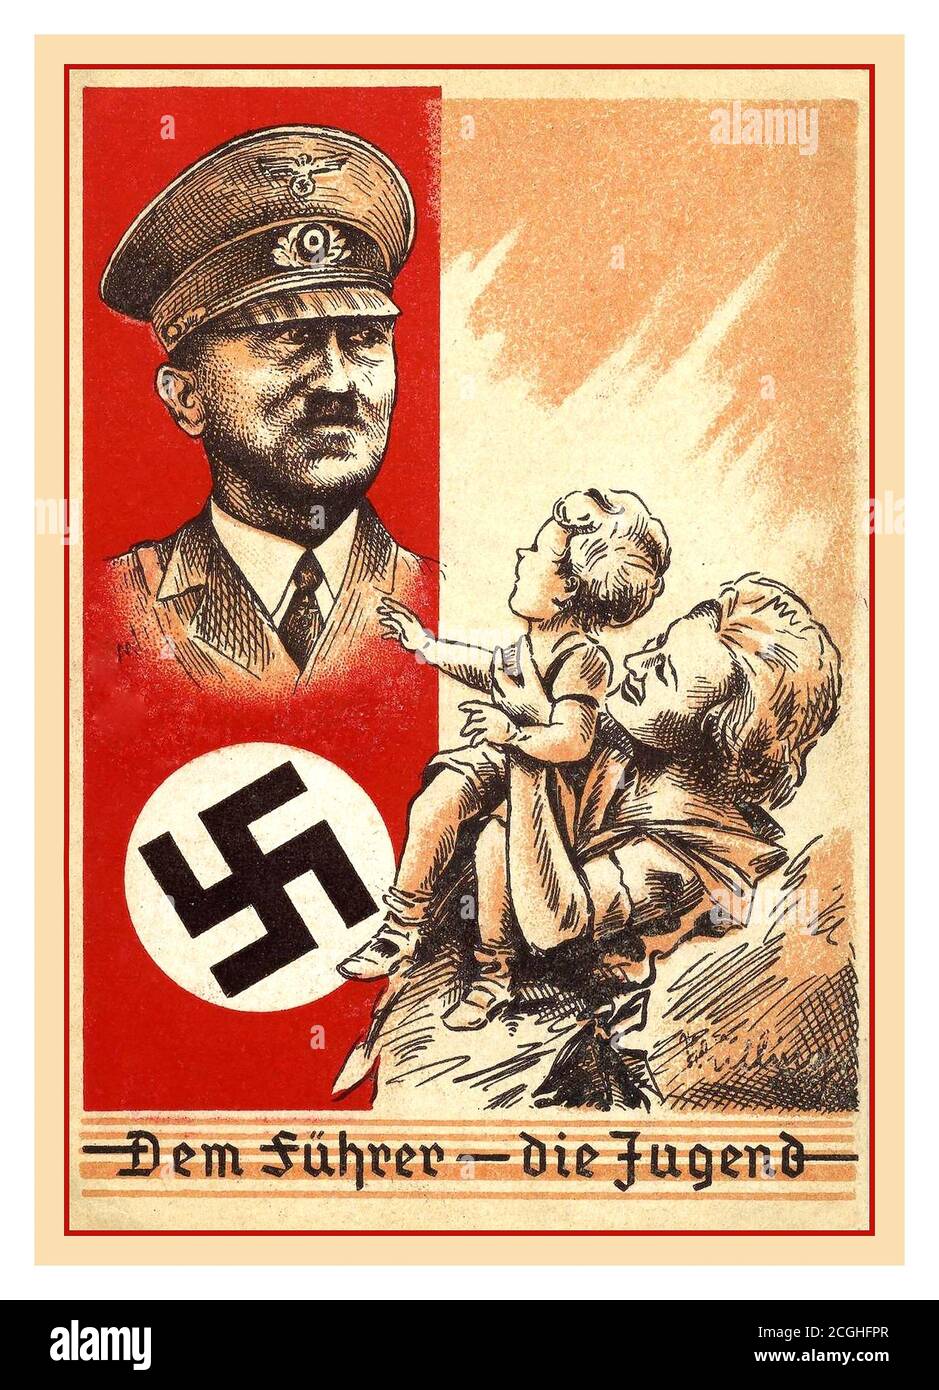 LA Germania nazista di ADOLF HITLER1930 Propaganda Poster "Dem Führer - Die Jugend' ‘il leader- Adolf Hitler e swastika dei giovani presentato con una madre tedesca e un bambino che cerca fino a. lui in ammirazione Foto Stock